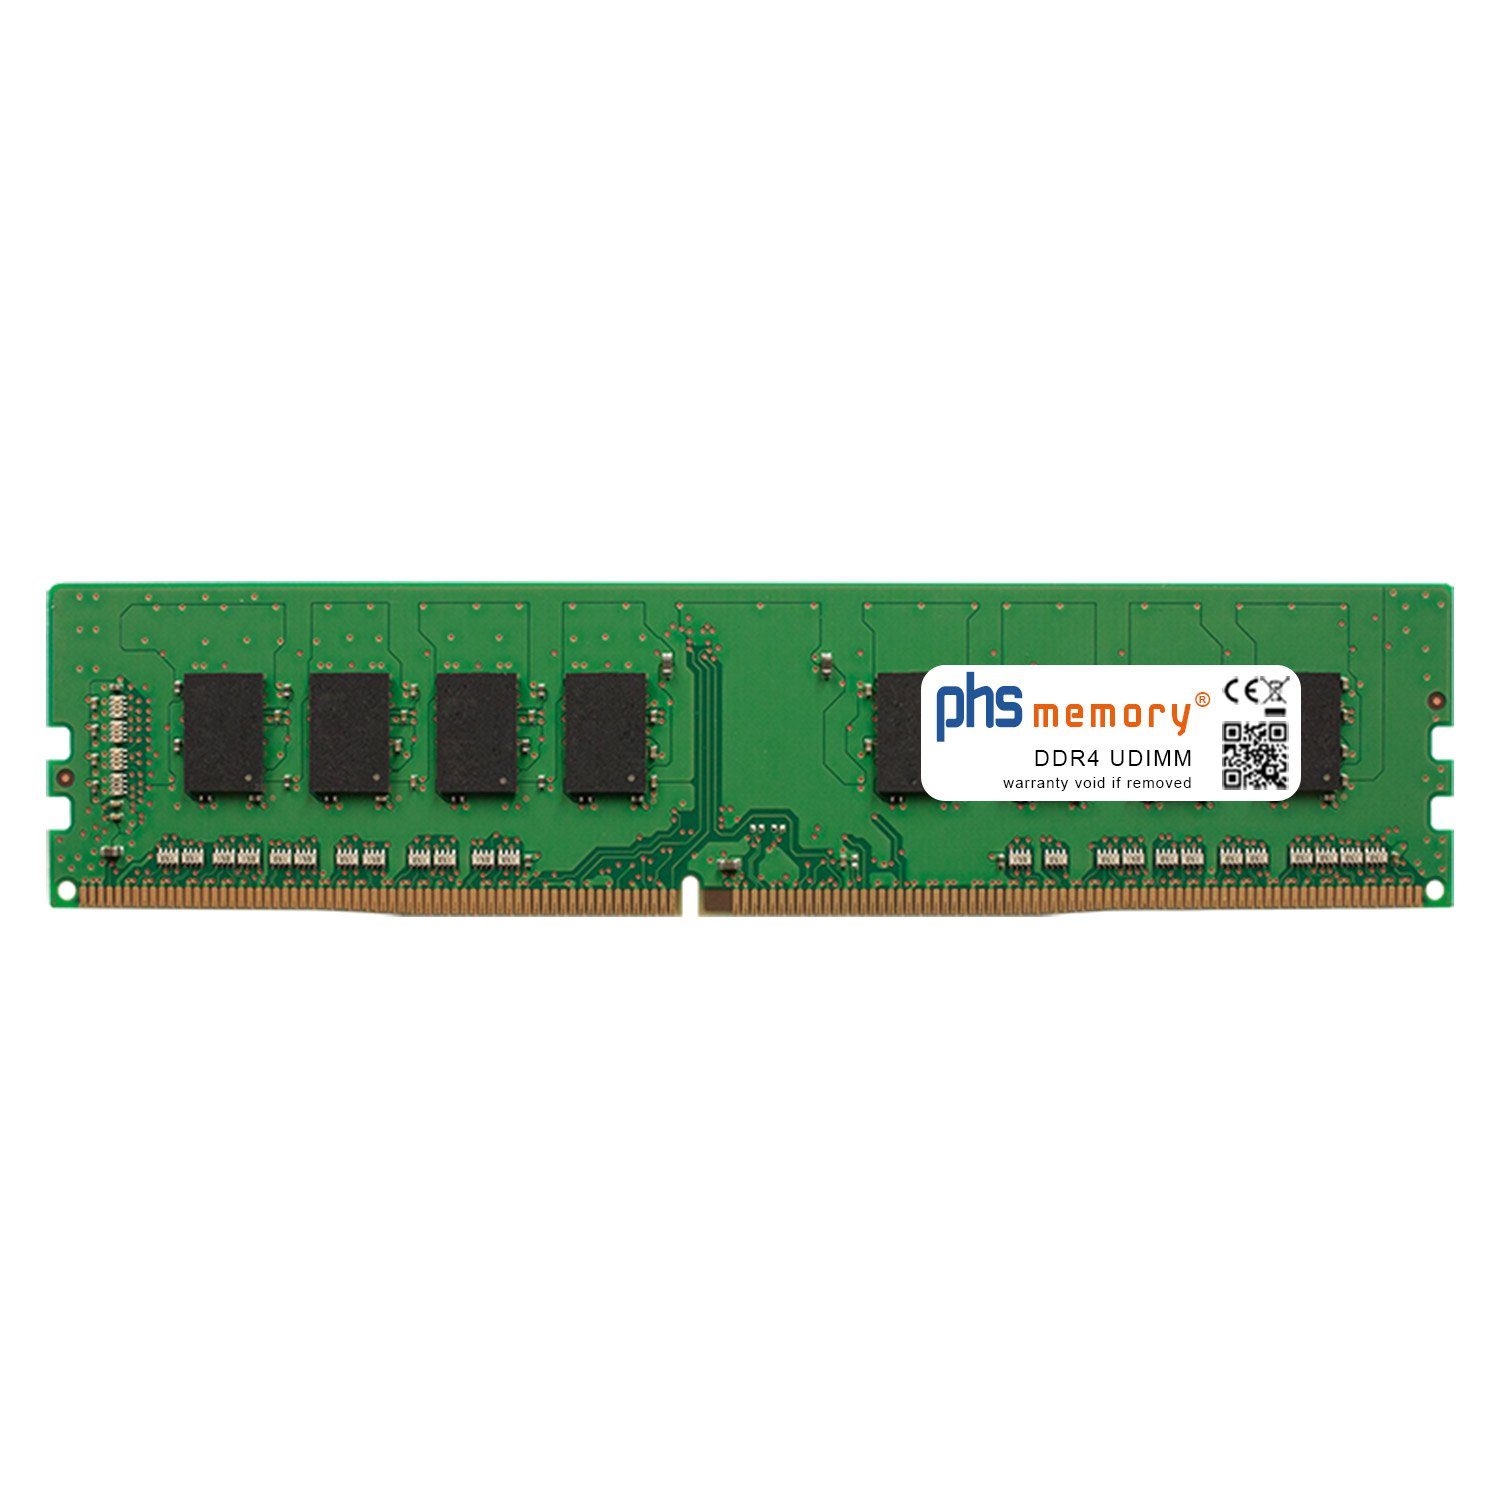 PHS-memory RAM für Captiva Power Starter R67-192 Arbeitsspeicher